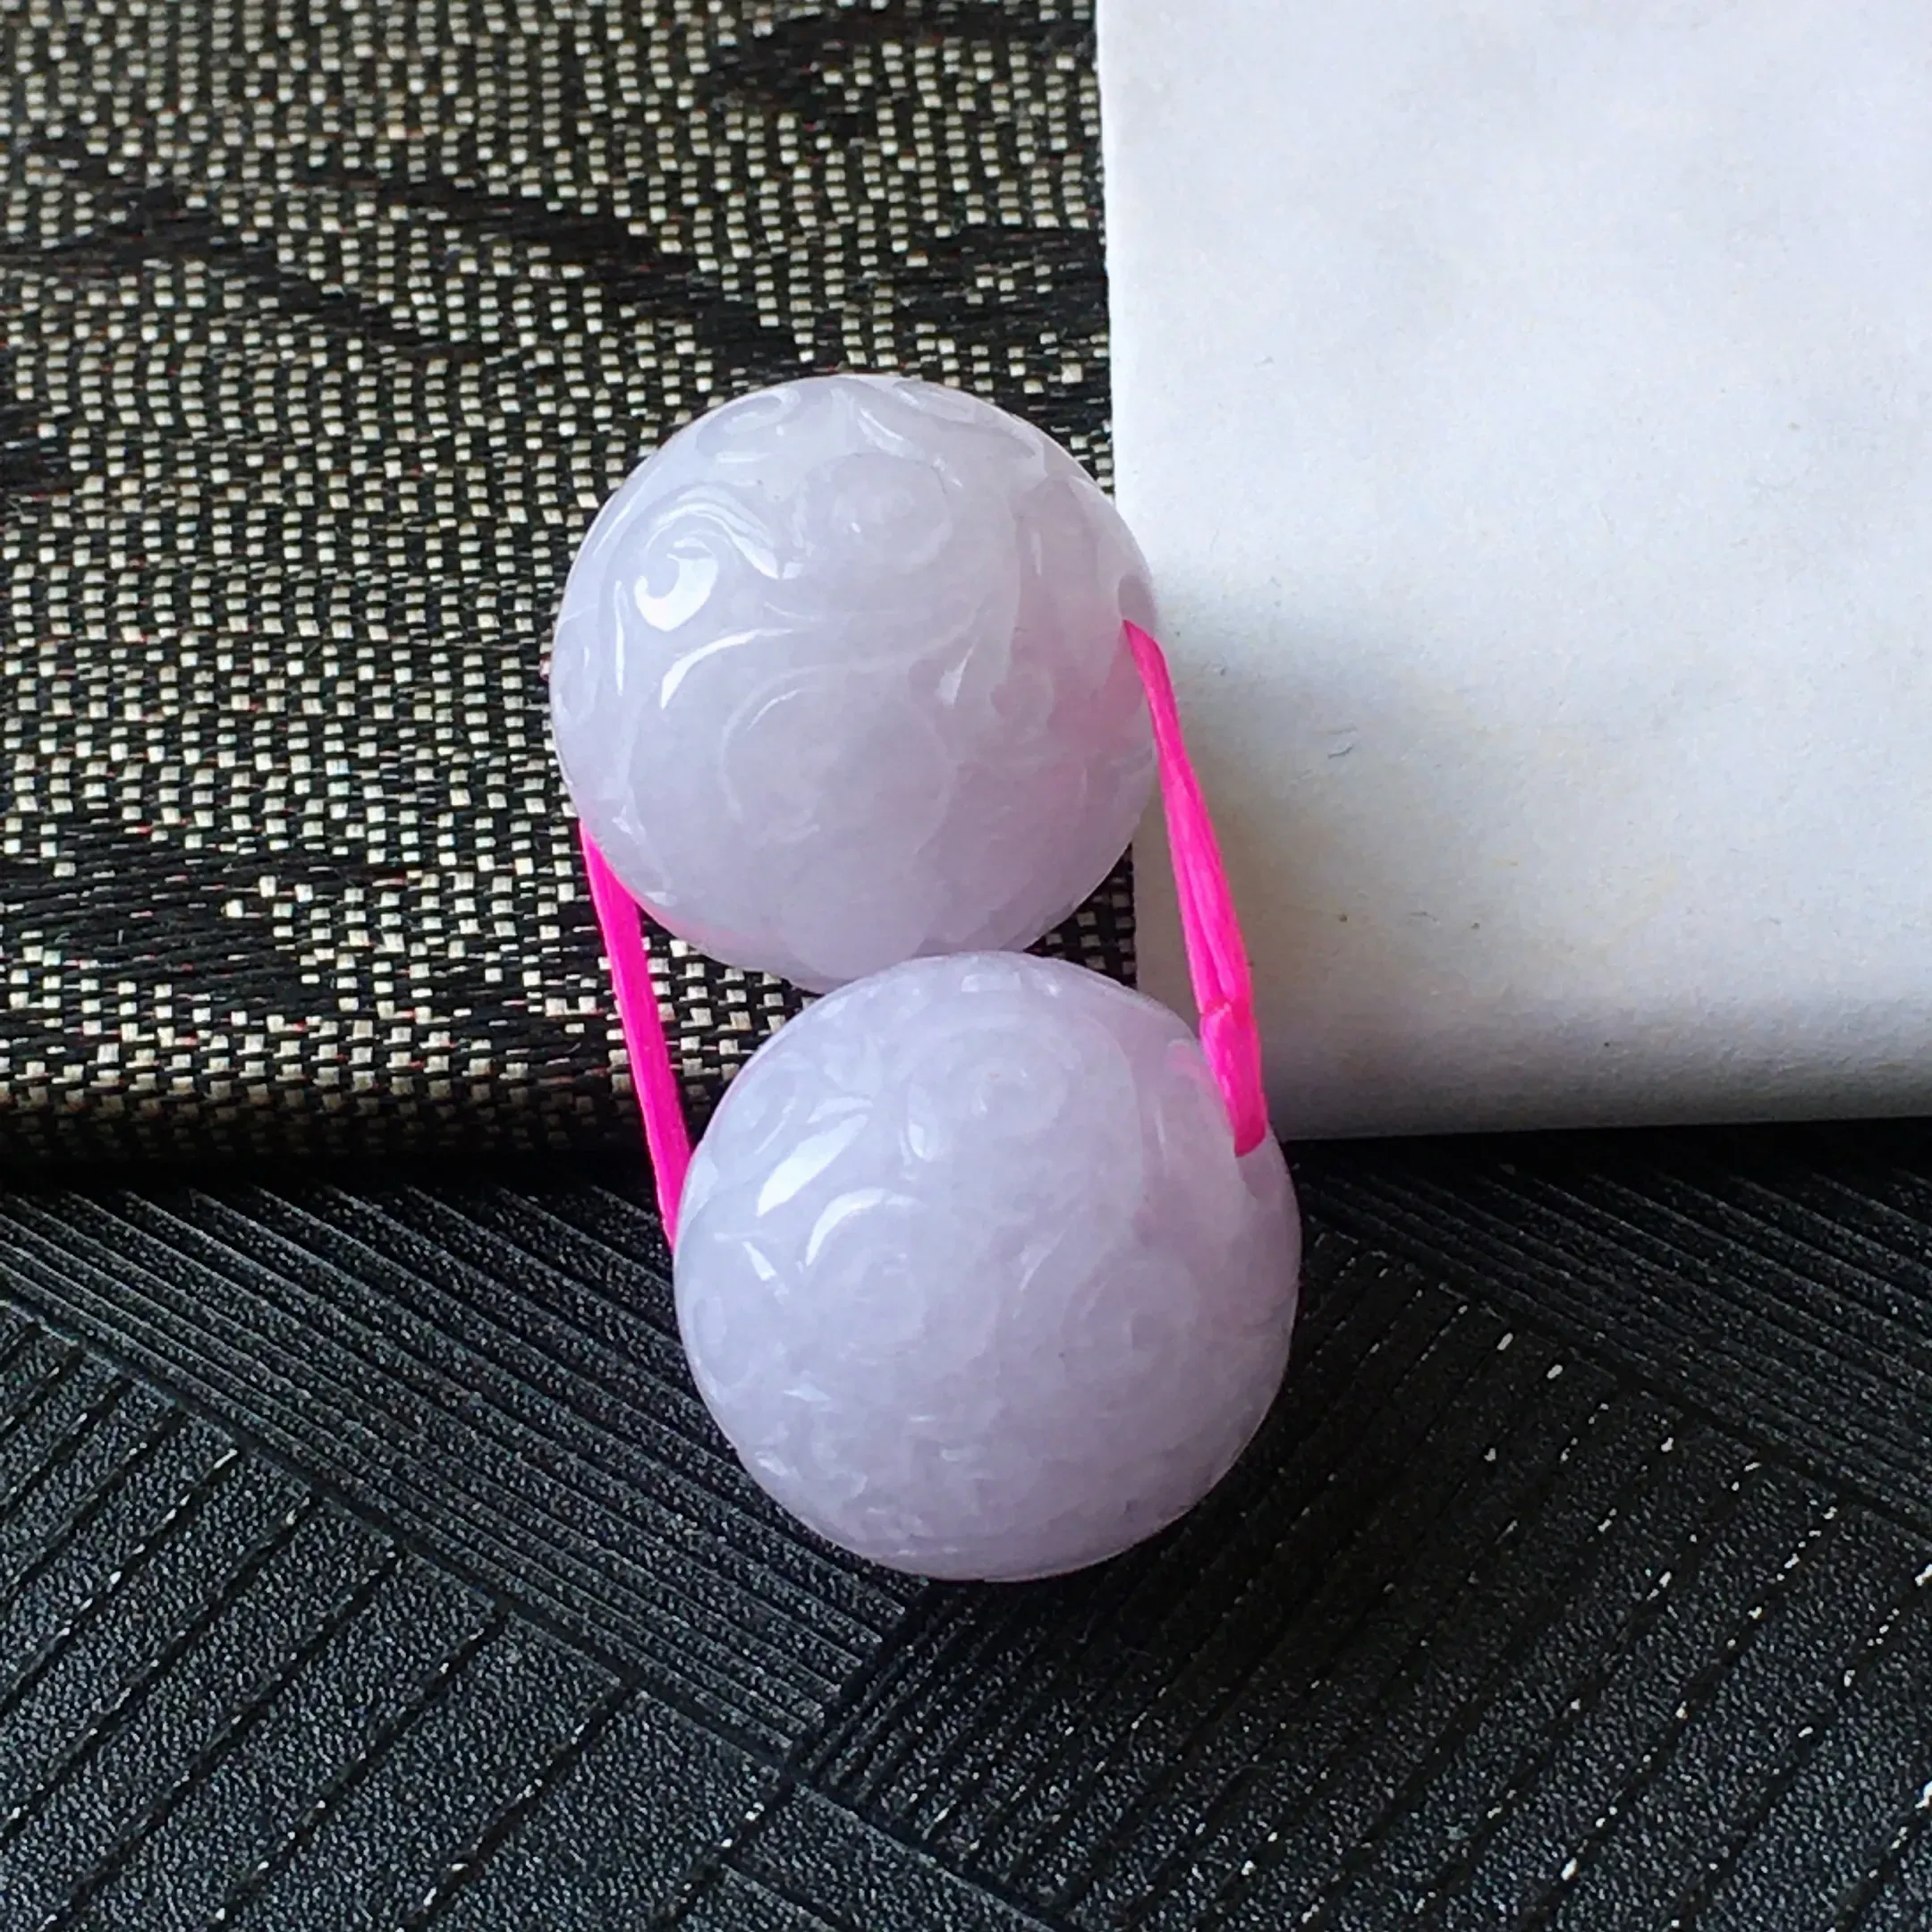 翡翠紫罗兰雕花龙珠裸石一对，种水好玉质细腻温润，颜色漂亮。尺寸：15.2mm/15.0mm